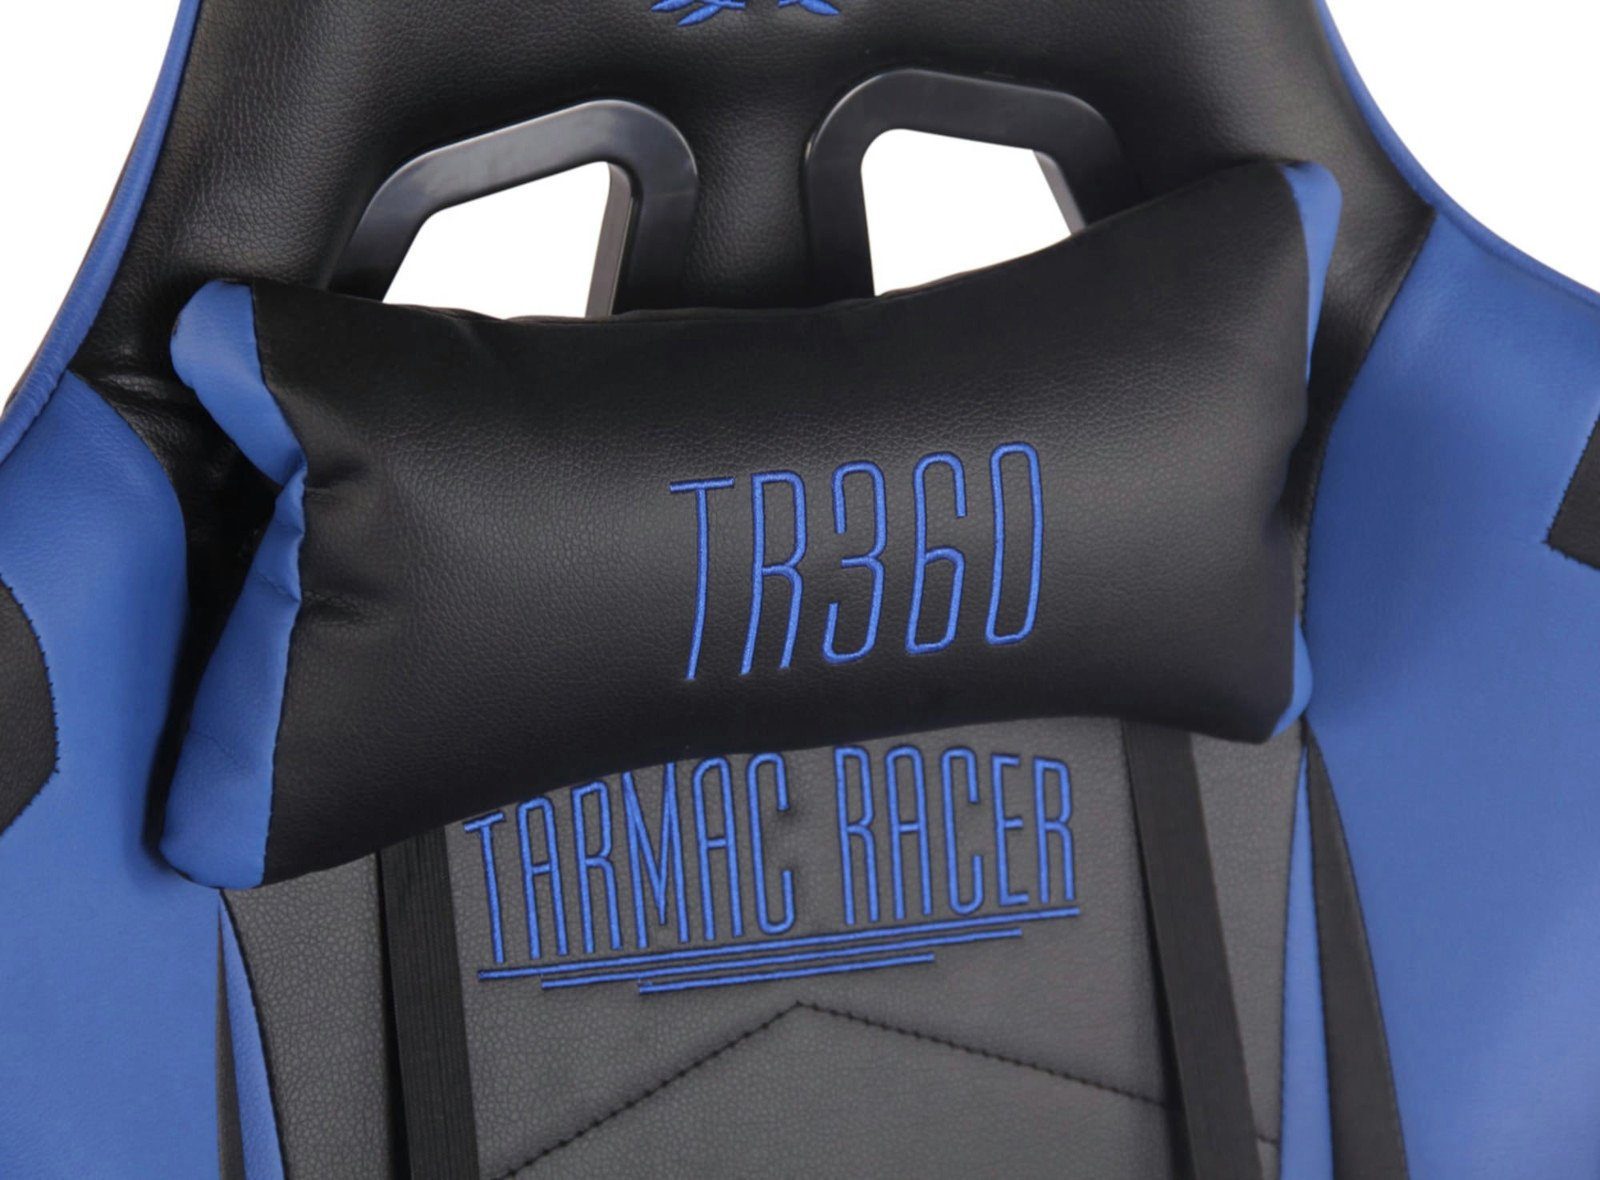 CLP Gaming Chair Turbo Fußablage, drehbar mit und Höhenverstellbar